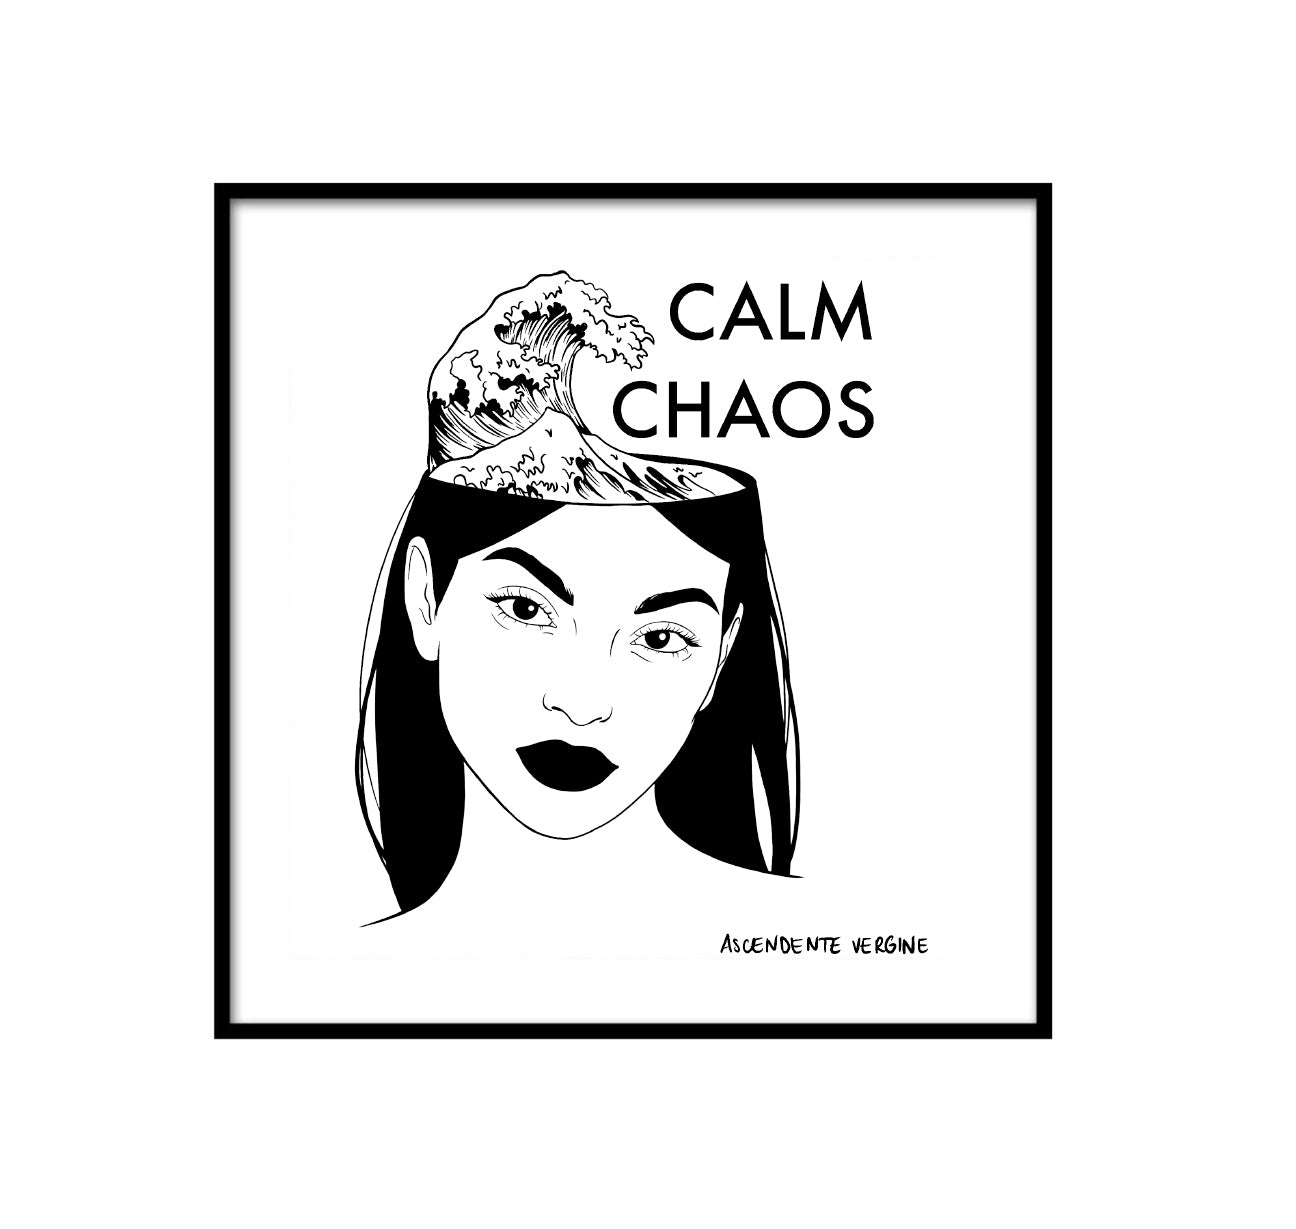 Calm chaos - Ascendente vergine